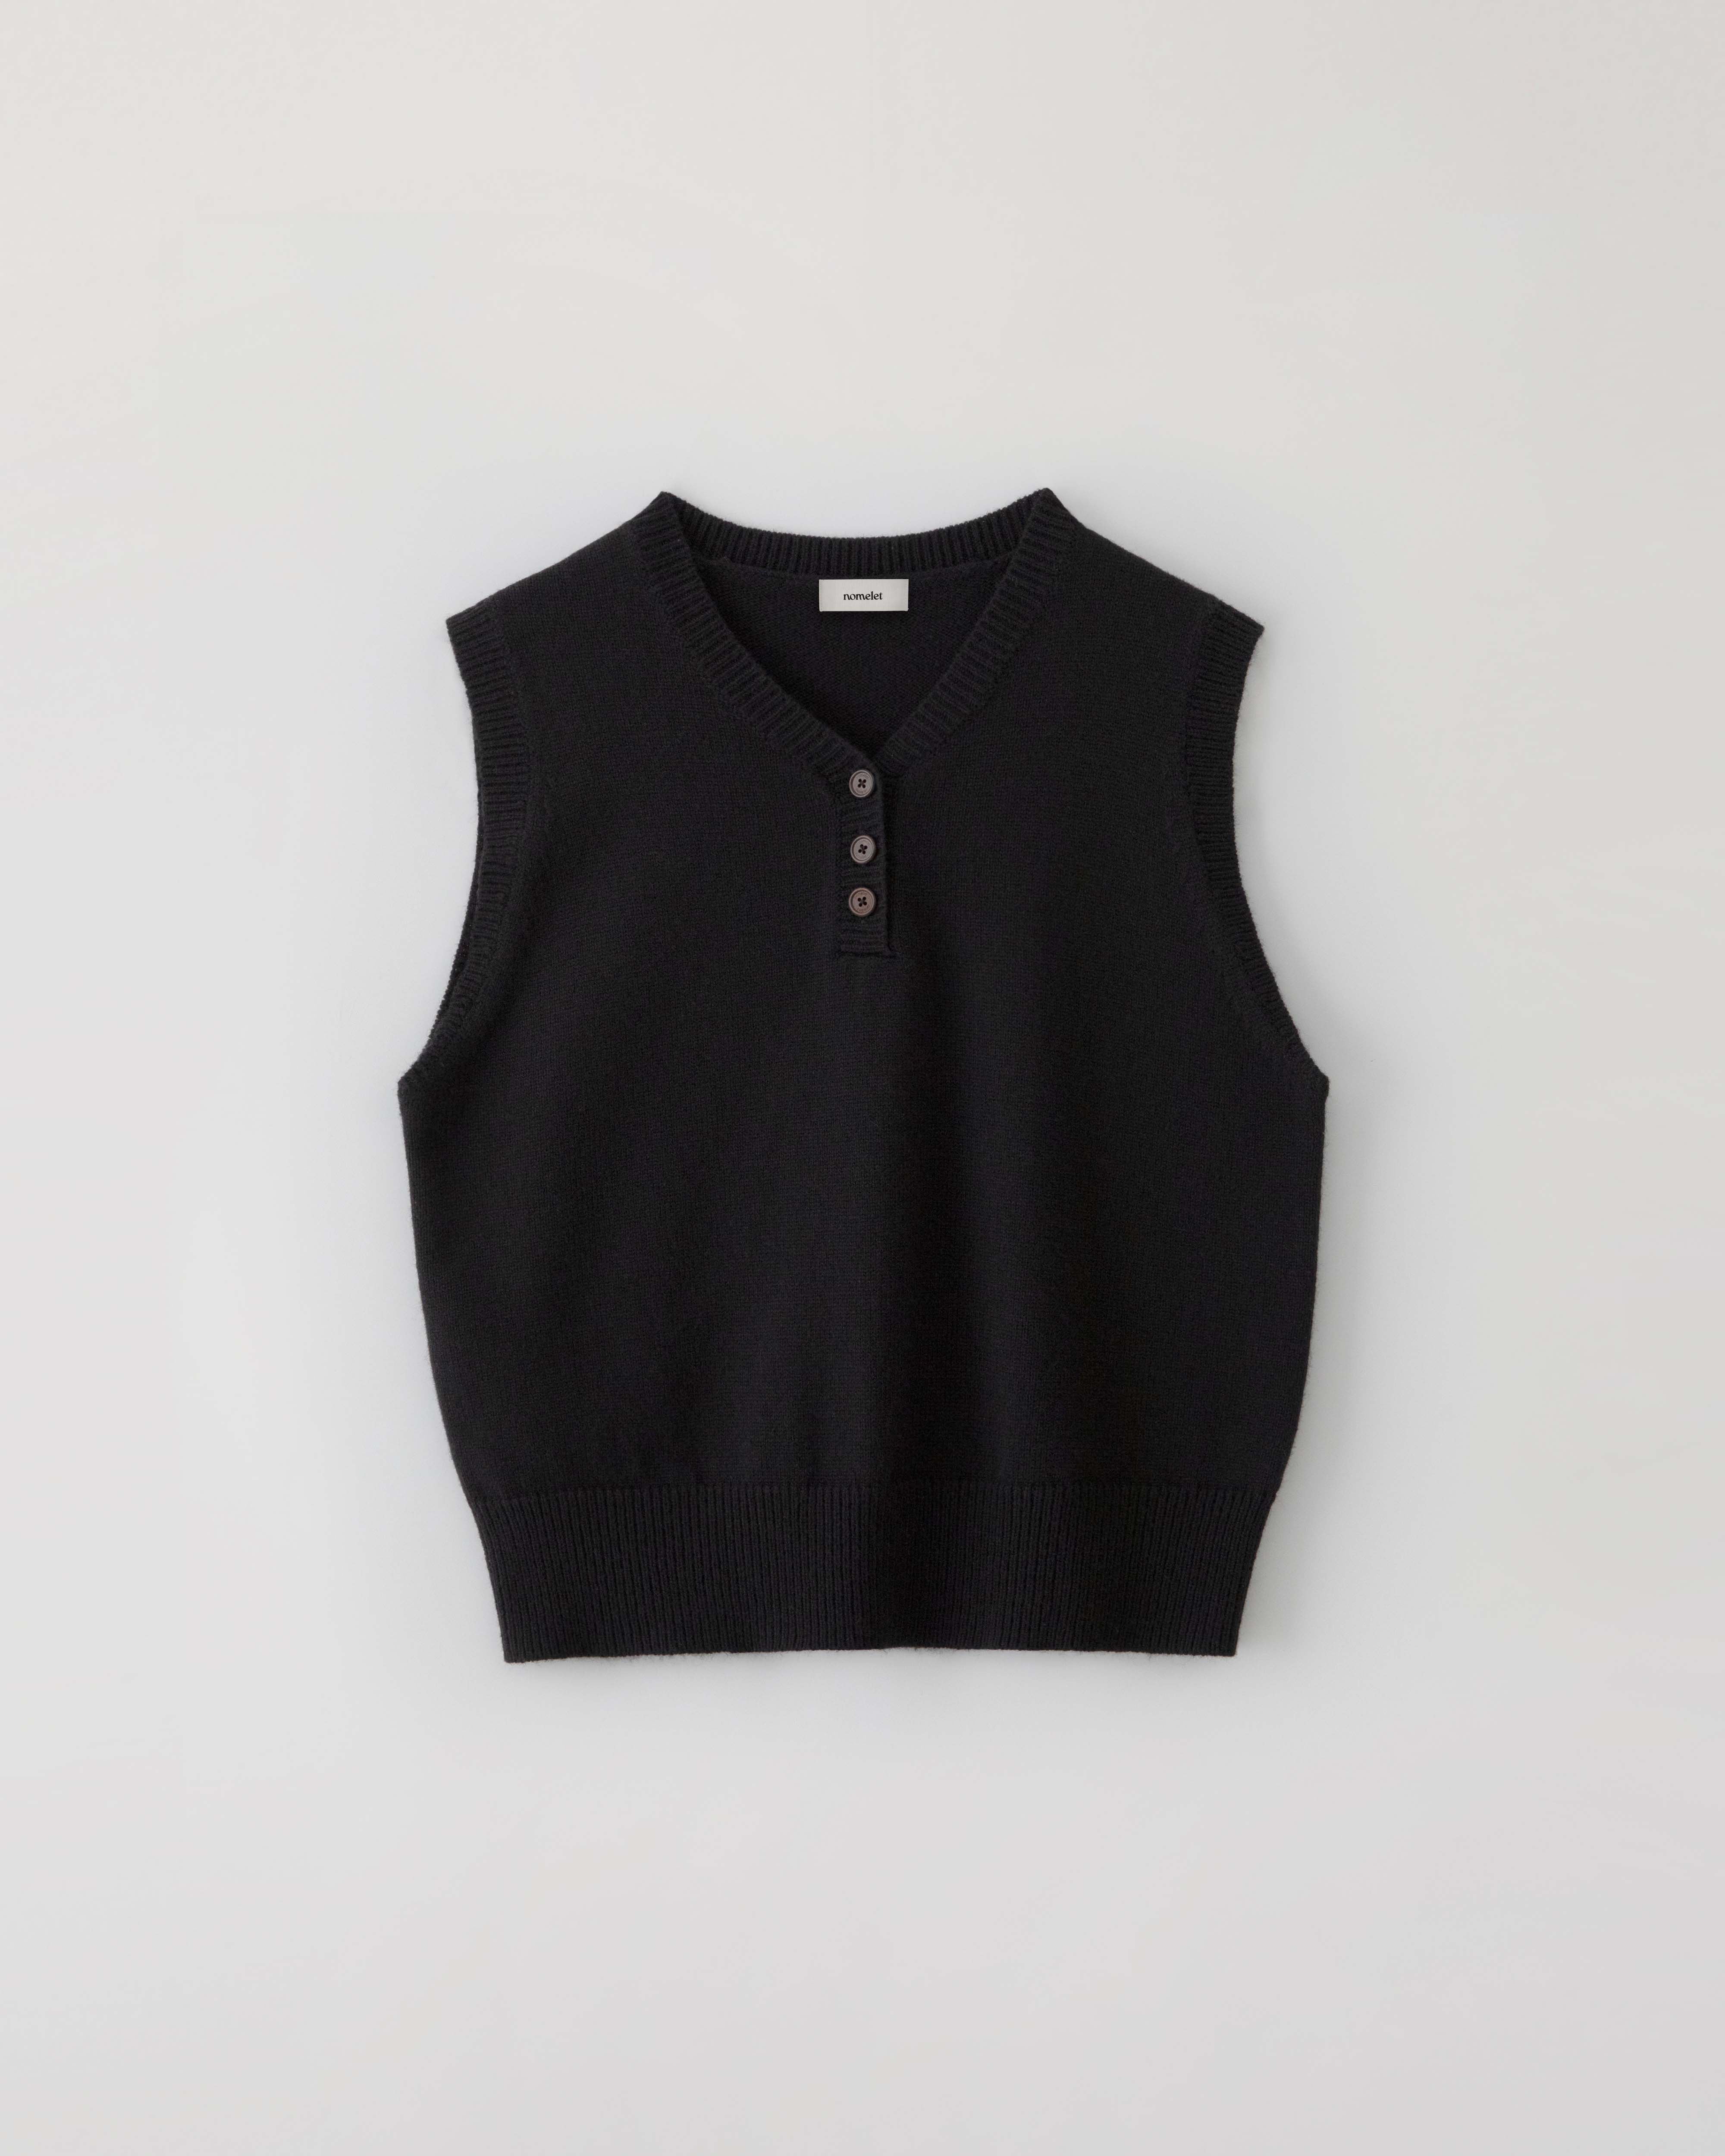 Ember knit vest - black